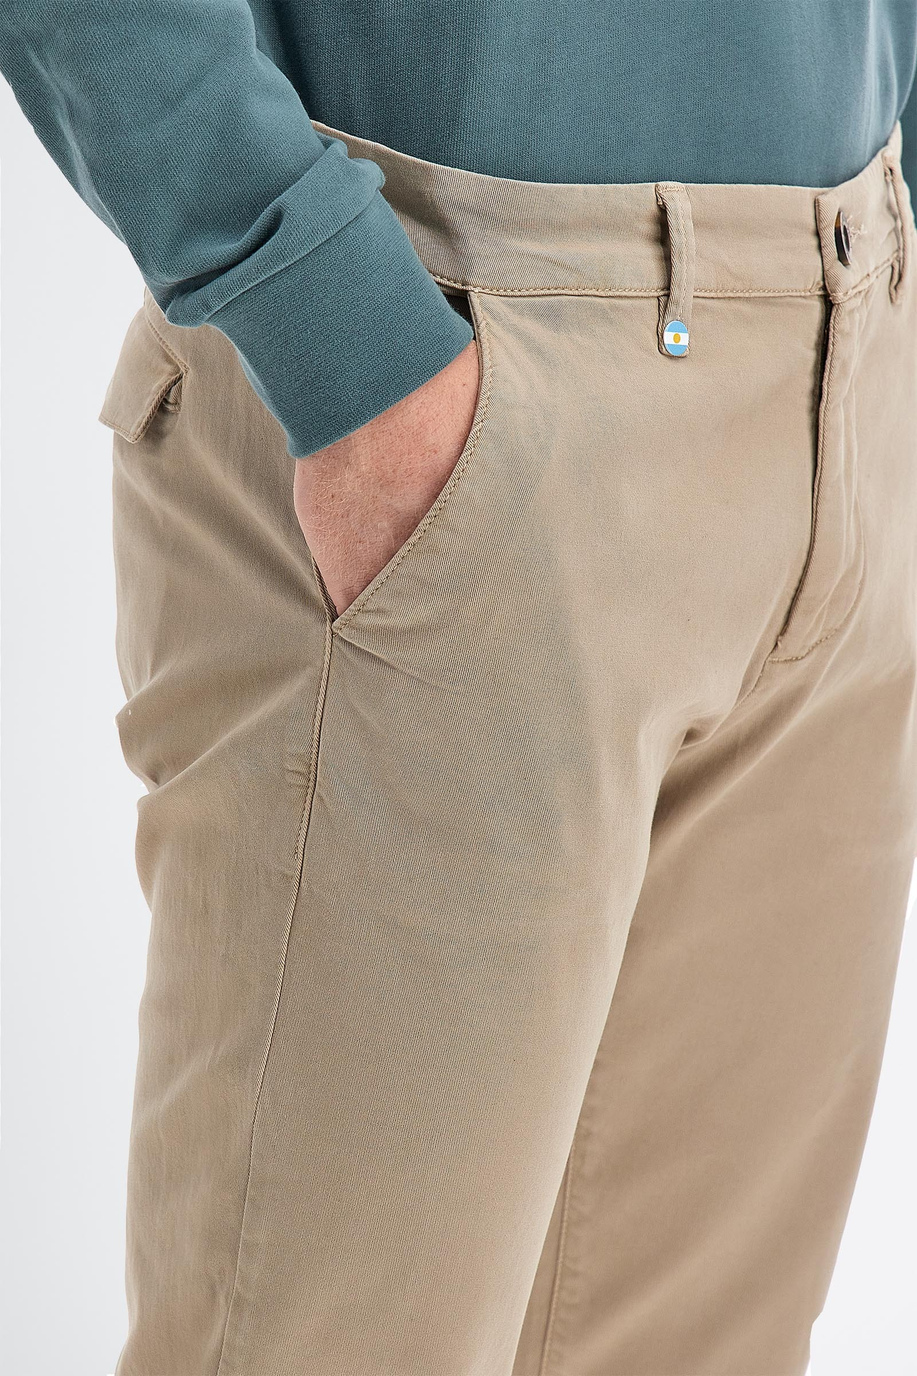 Pantalone da uomo in cotone twill stretch modello chino slim fit